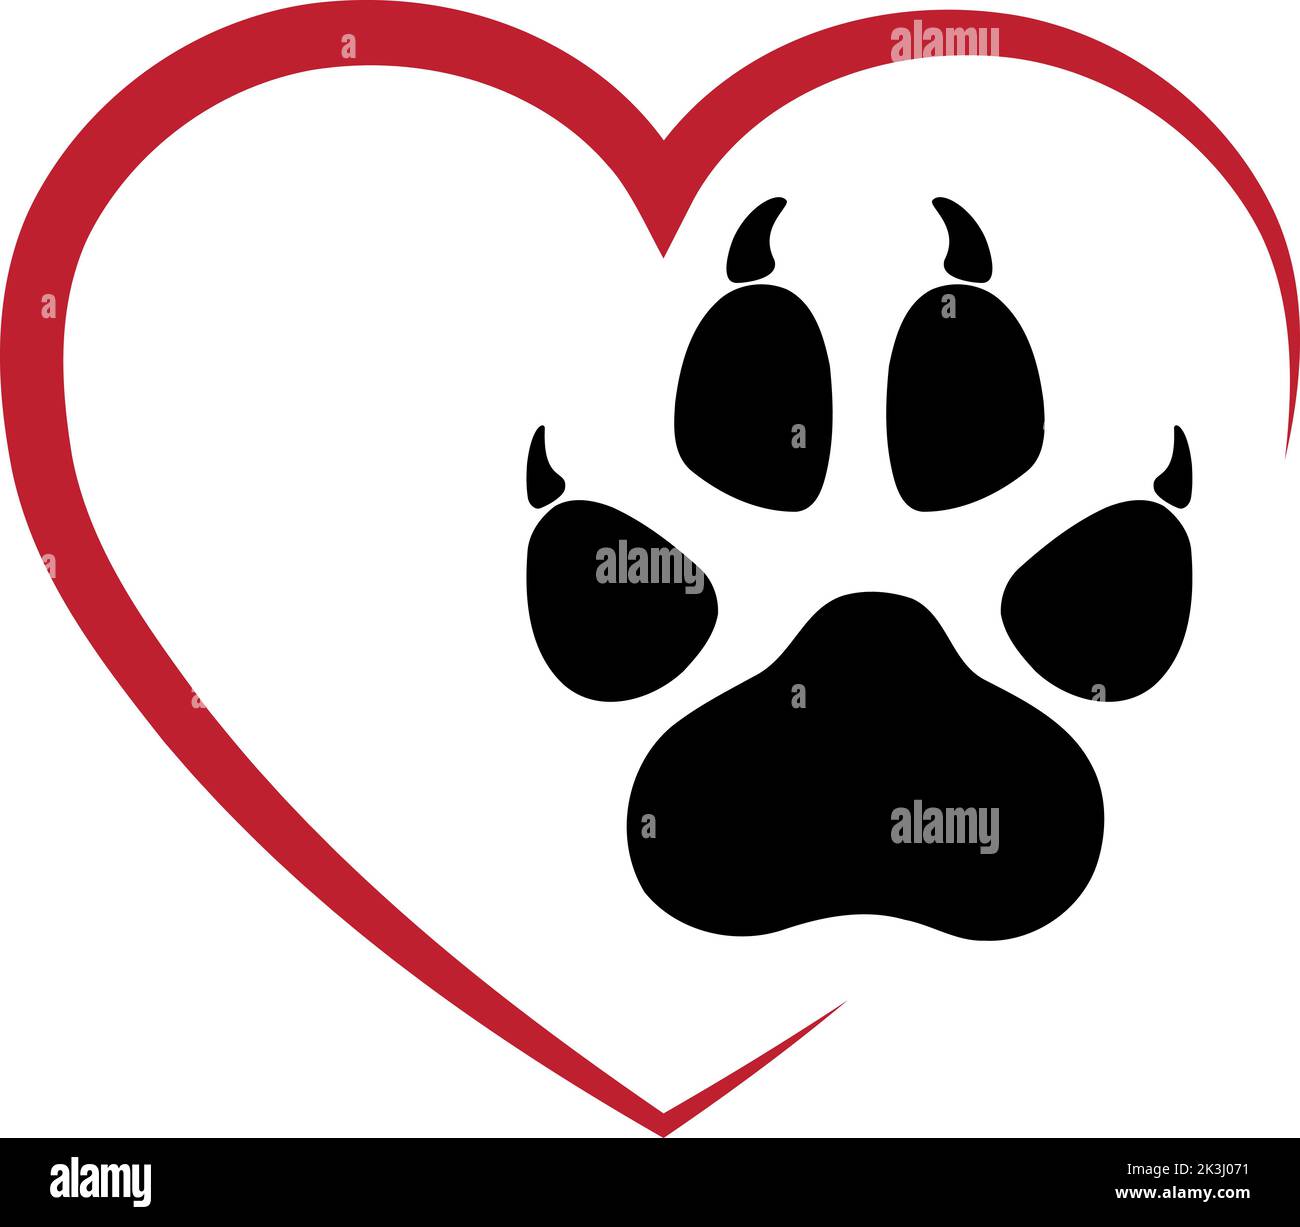 Cuore e zampa, cani, cuore per cani, vet logo Illustrazione Vettoriale